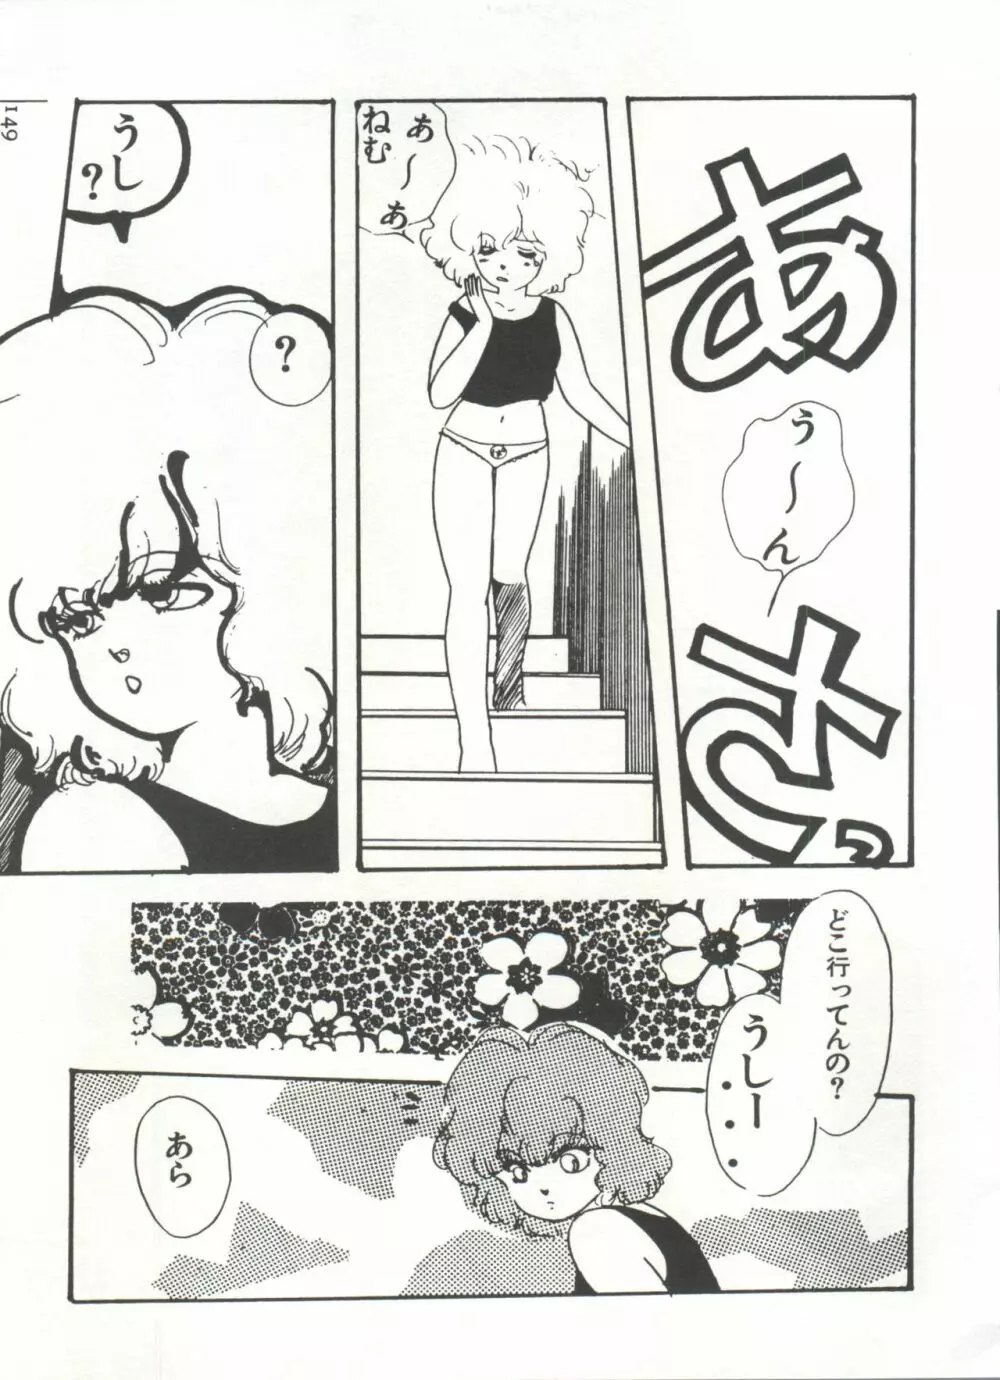 [Anthology] 美少女症候群(2) Lolita syndrome (よろず) 152ページ